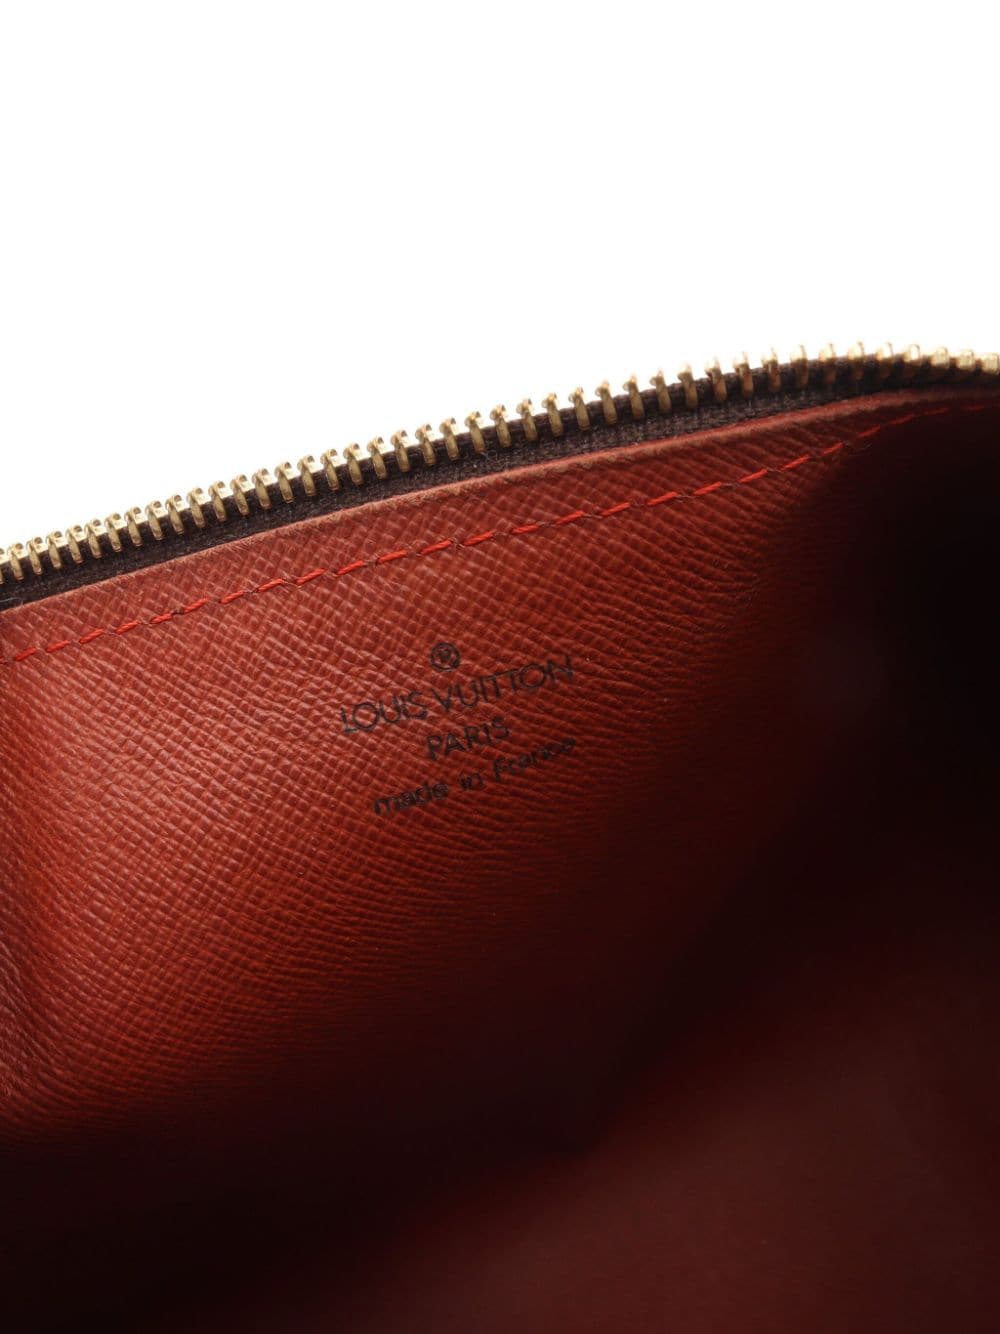 Louis Vuitton 2005 pre-owned Papillon 30 handbag - ShopStyle Satchels & Top  Handle Bags